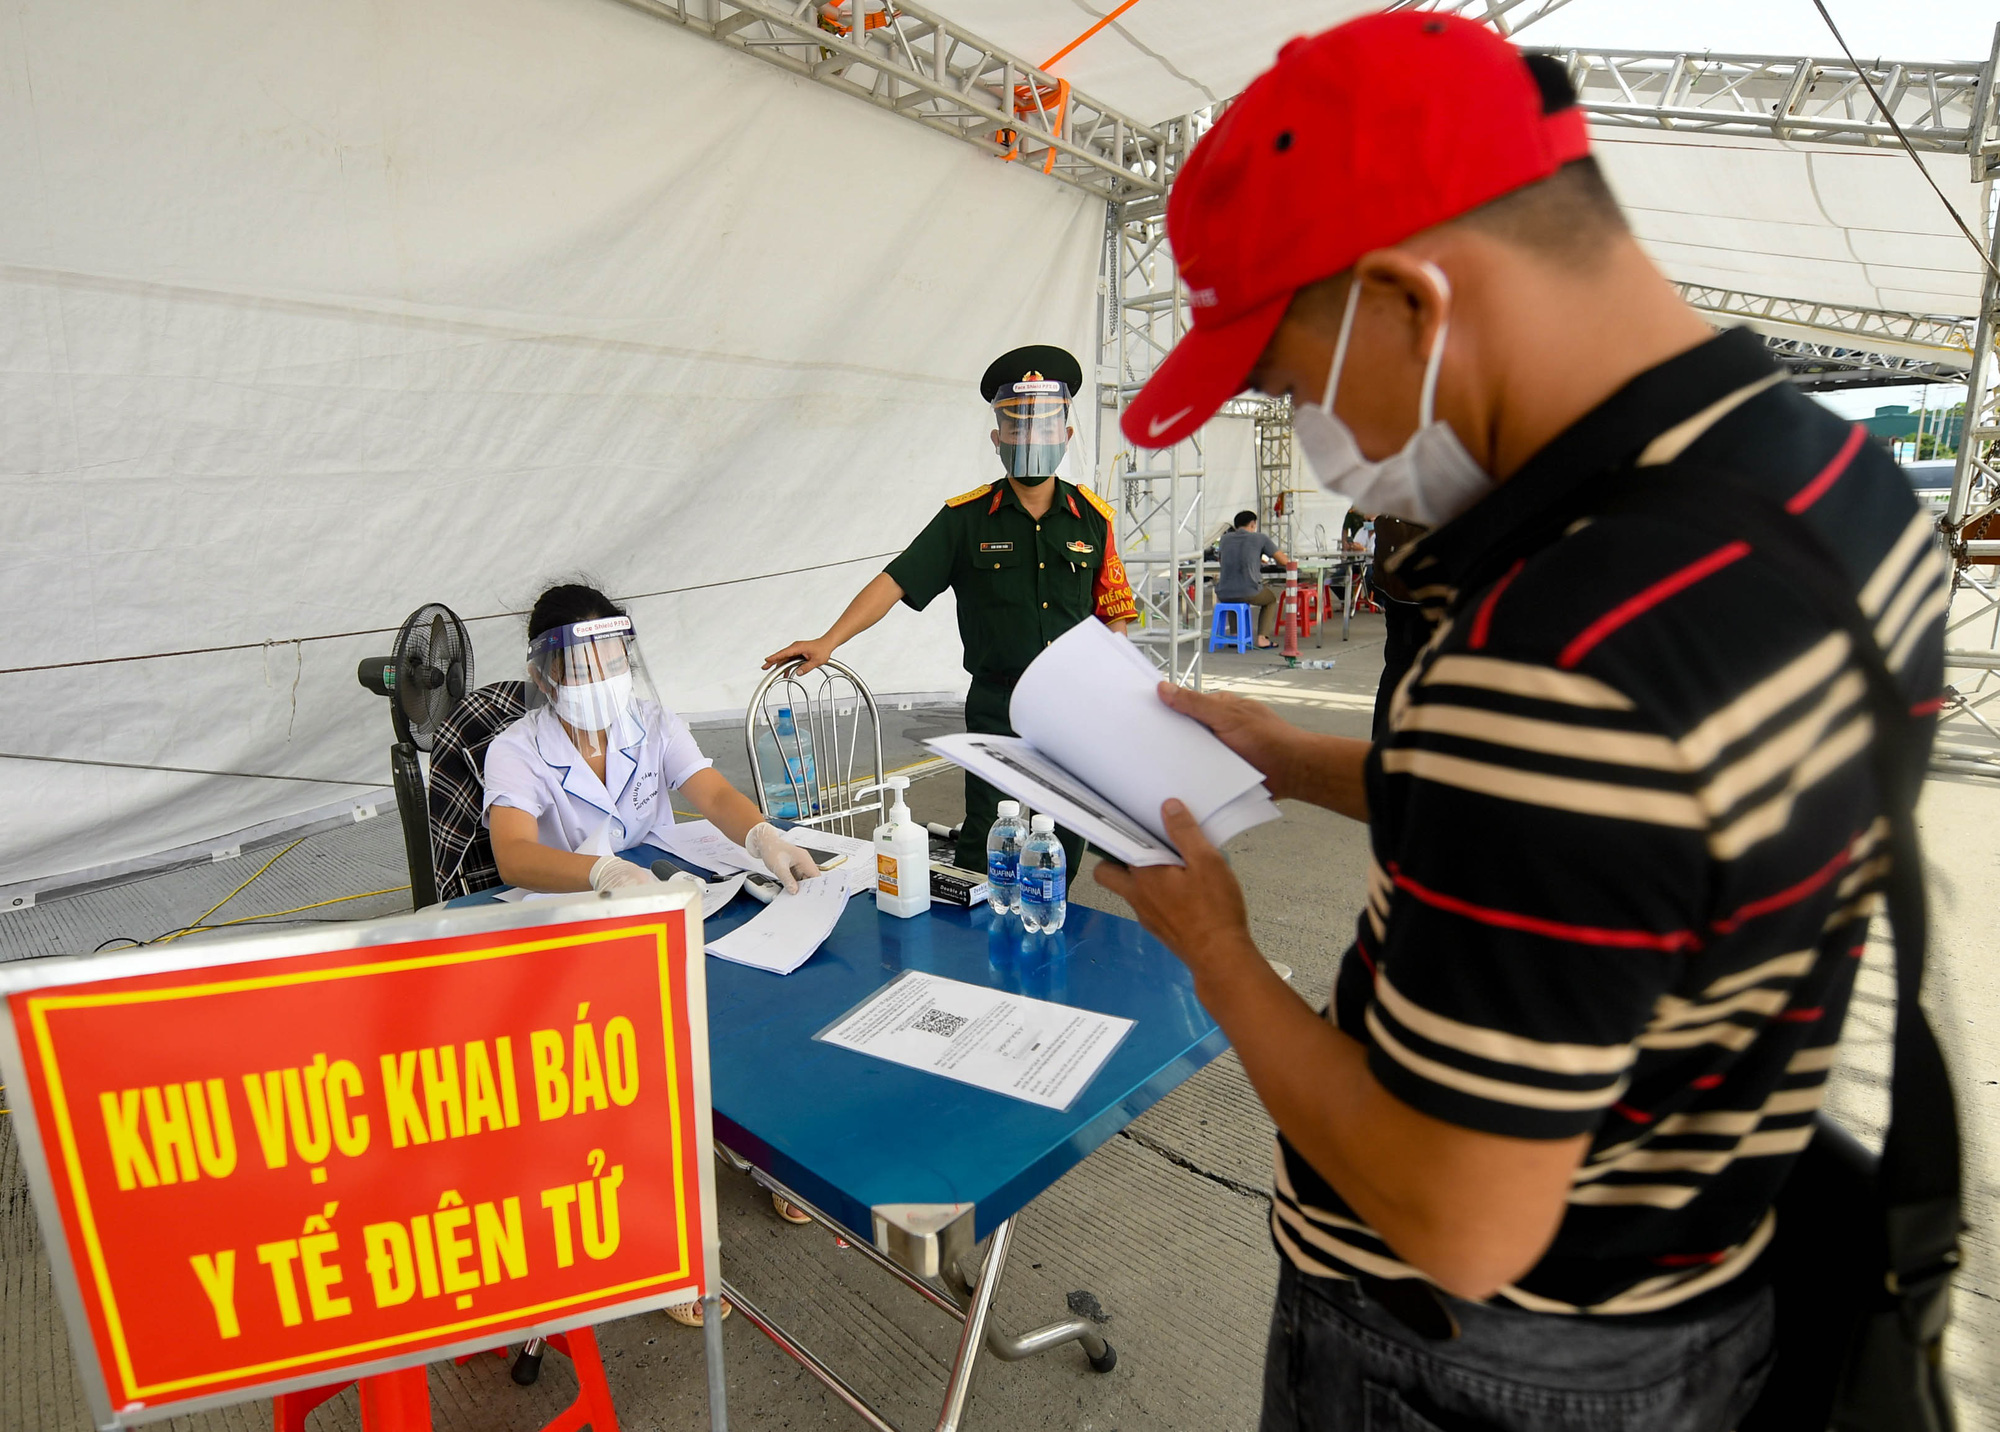 Việt Nam sẽ bỏ khai báo y tế nội địa - Ảnh 1.